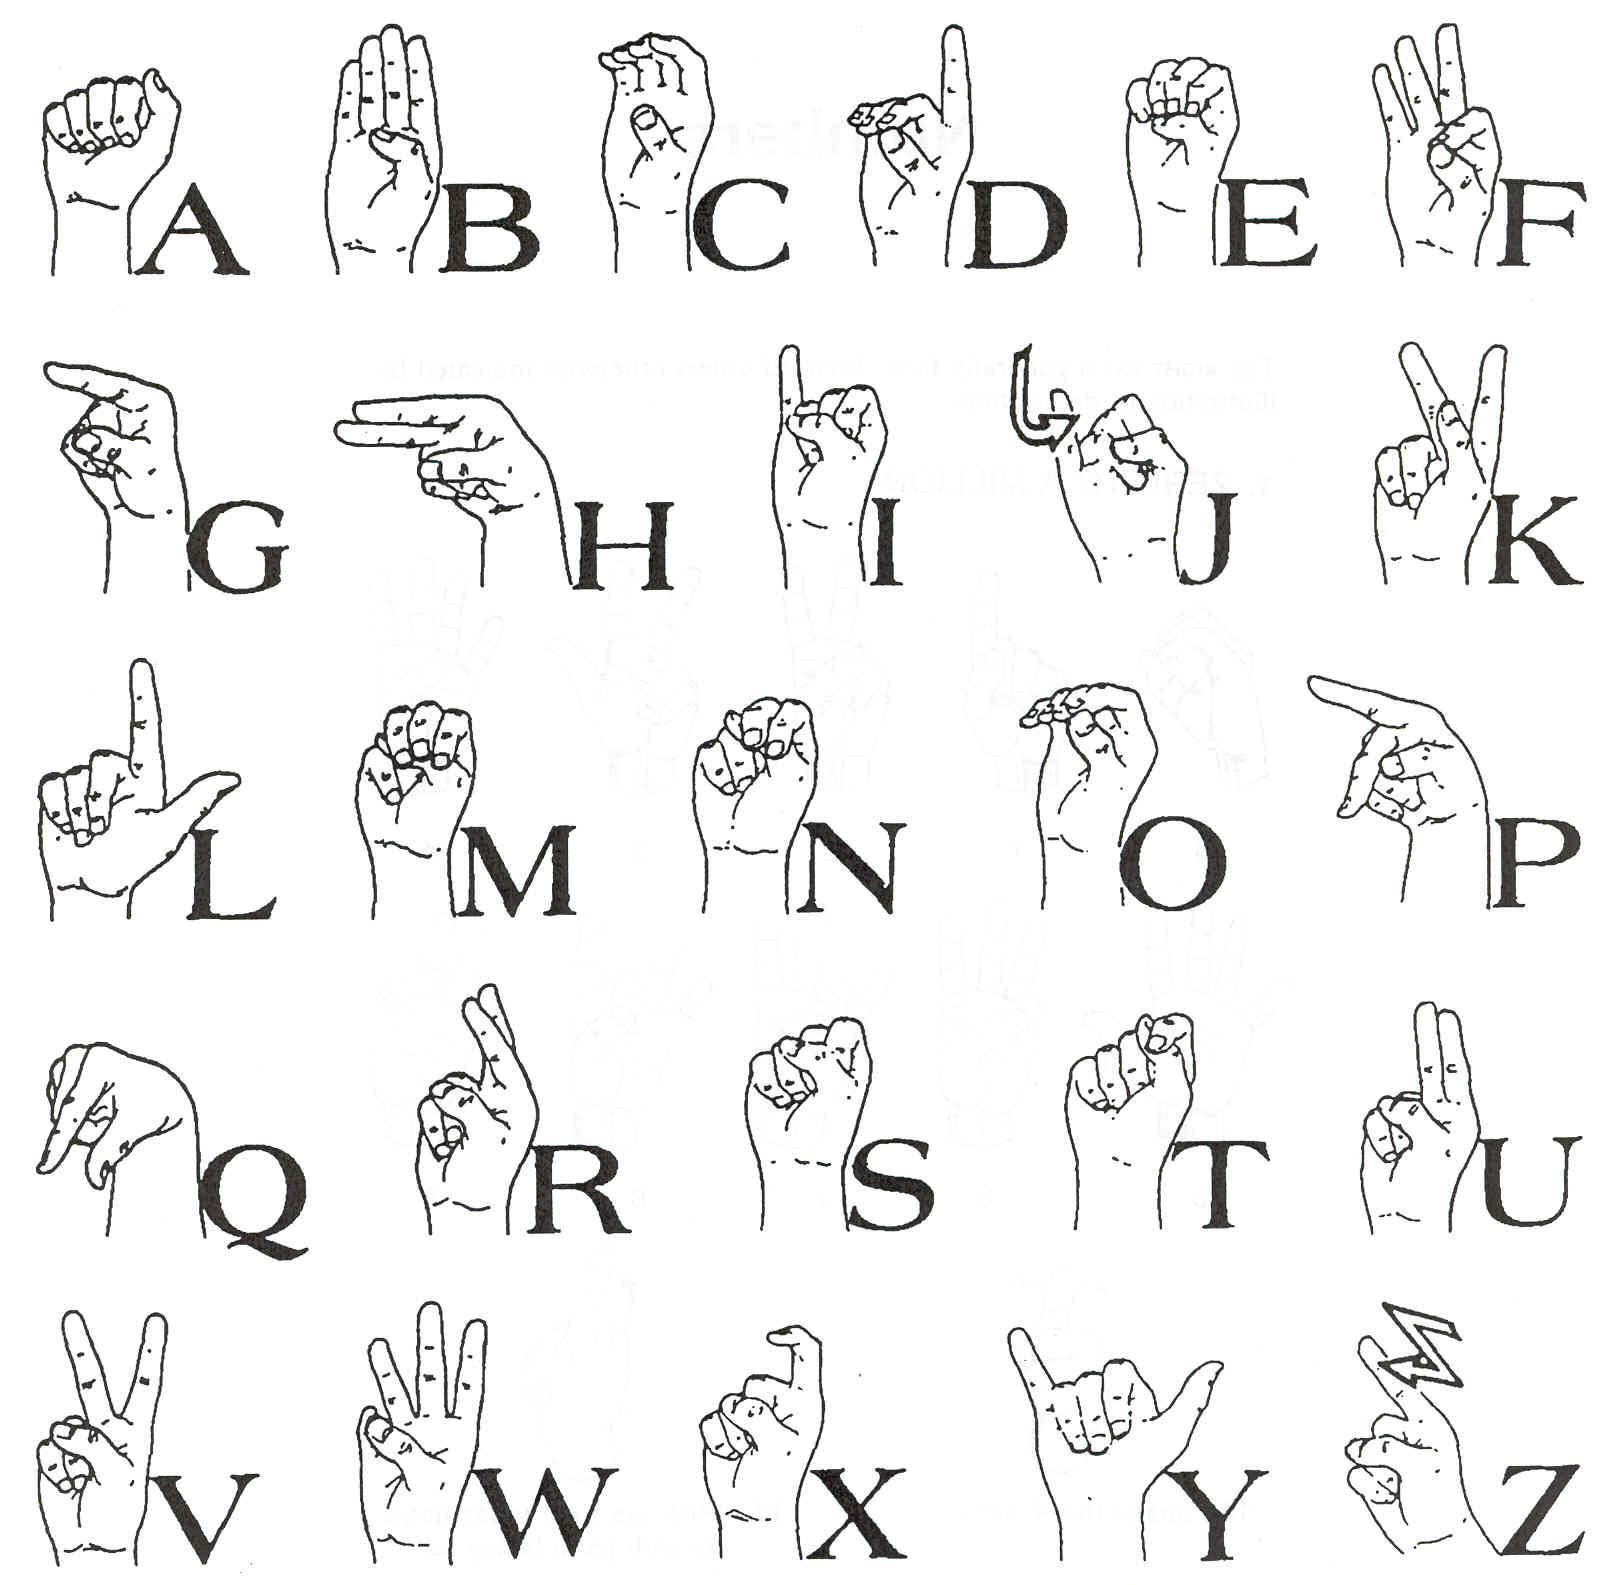 sign language.jpg